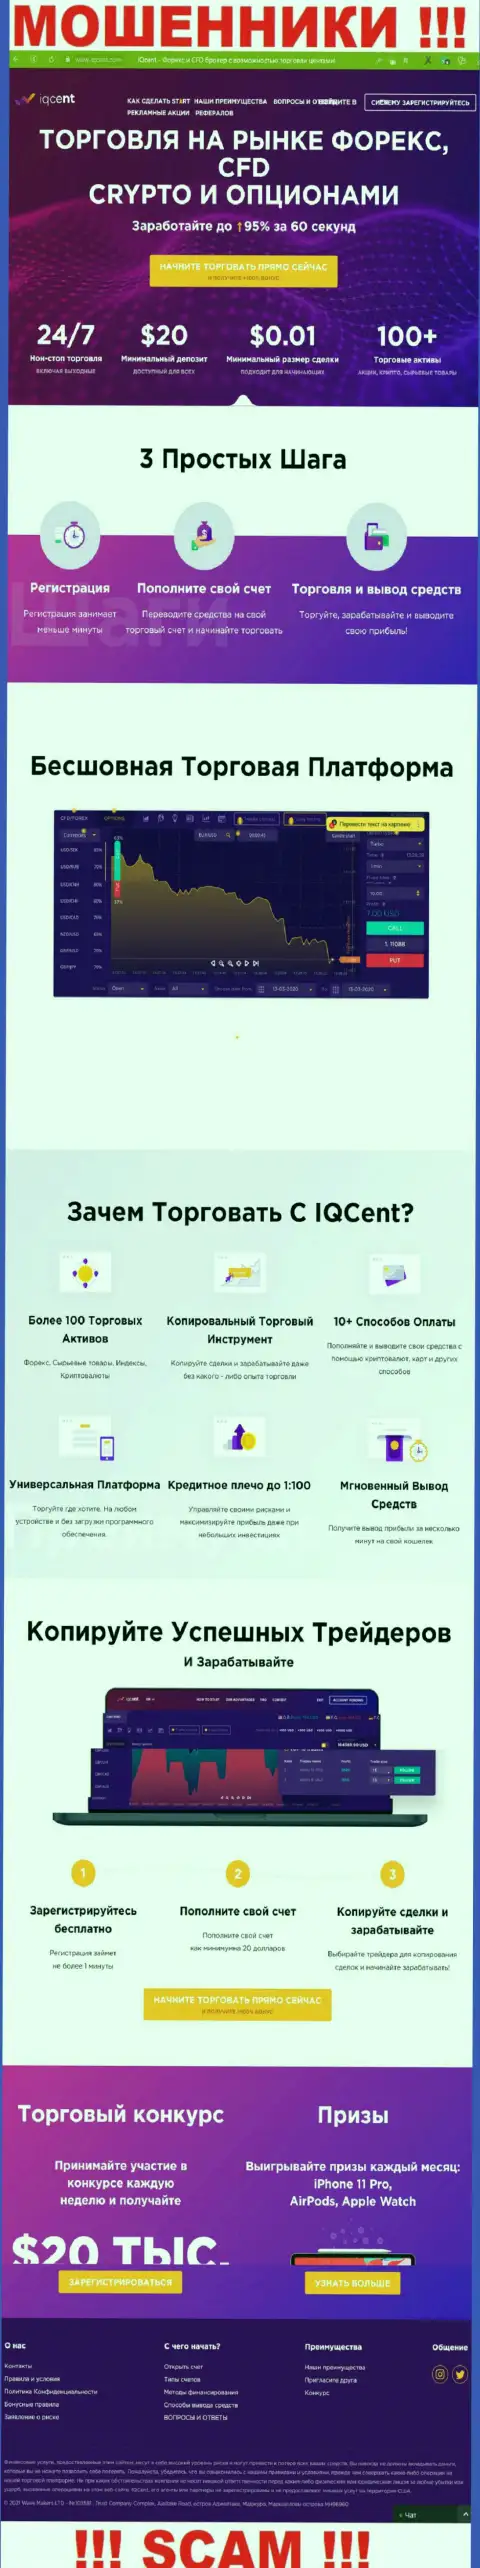 Официальный сайт мошенников IQCent Com, заполненный материалами для наивных людей